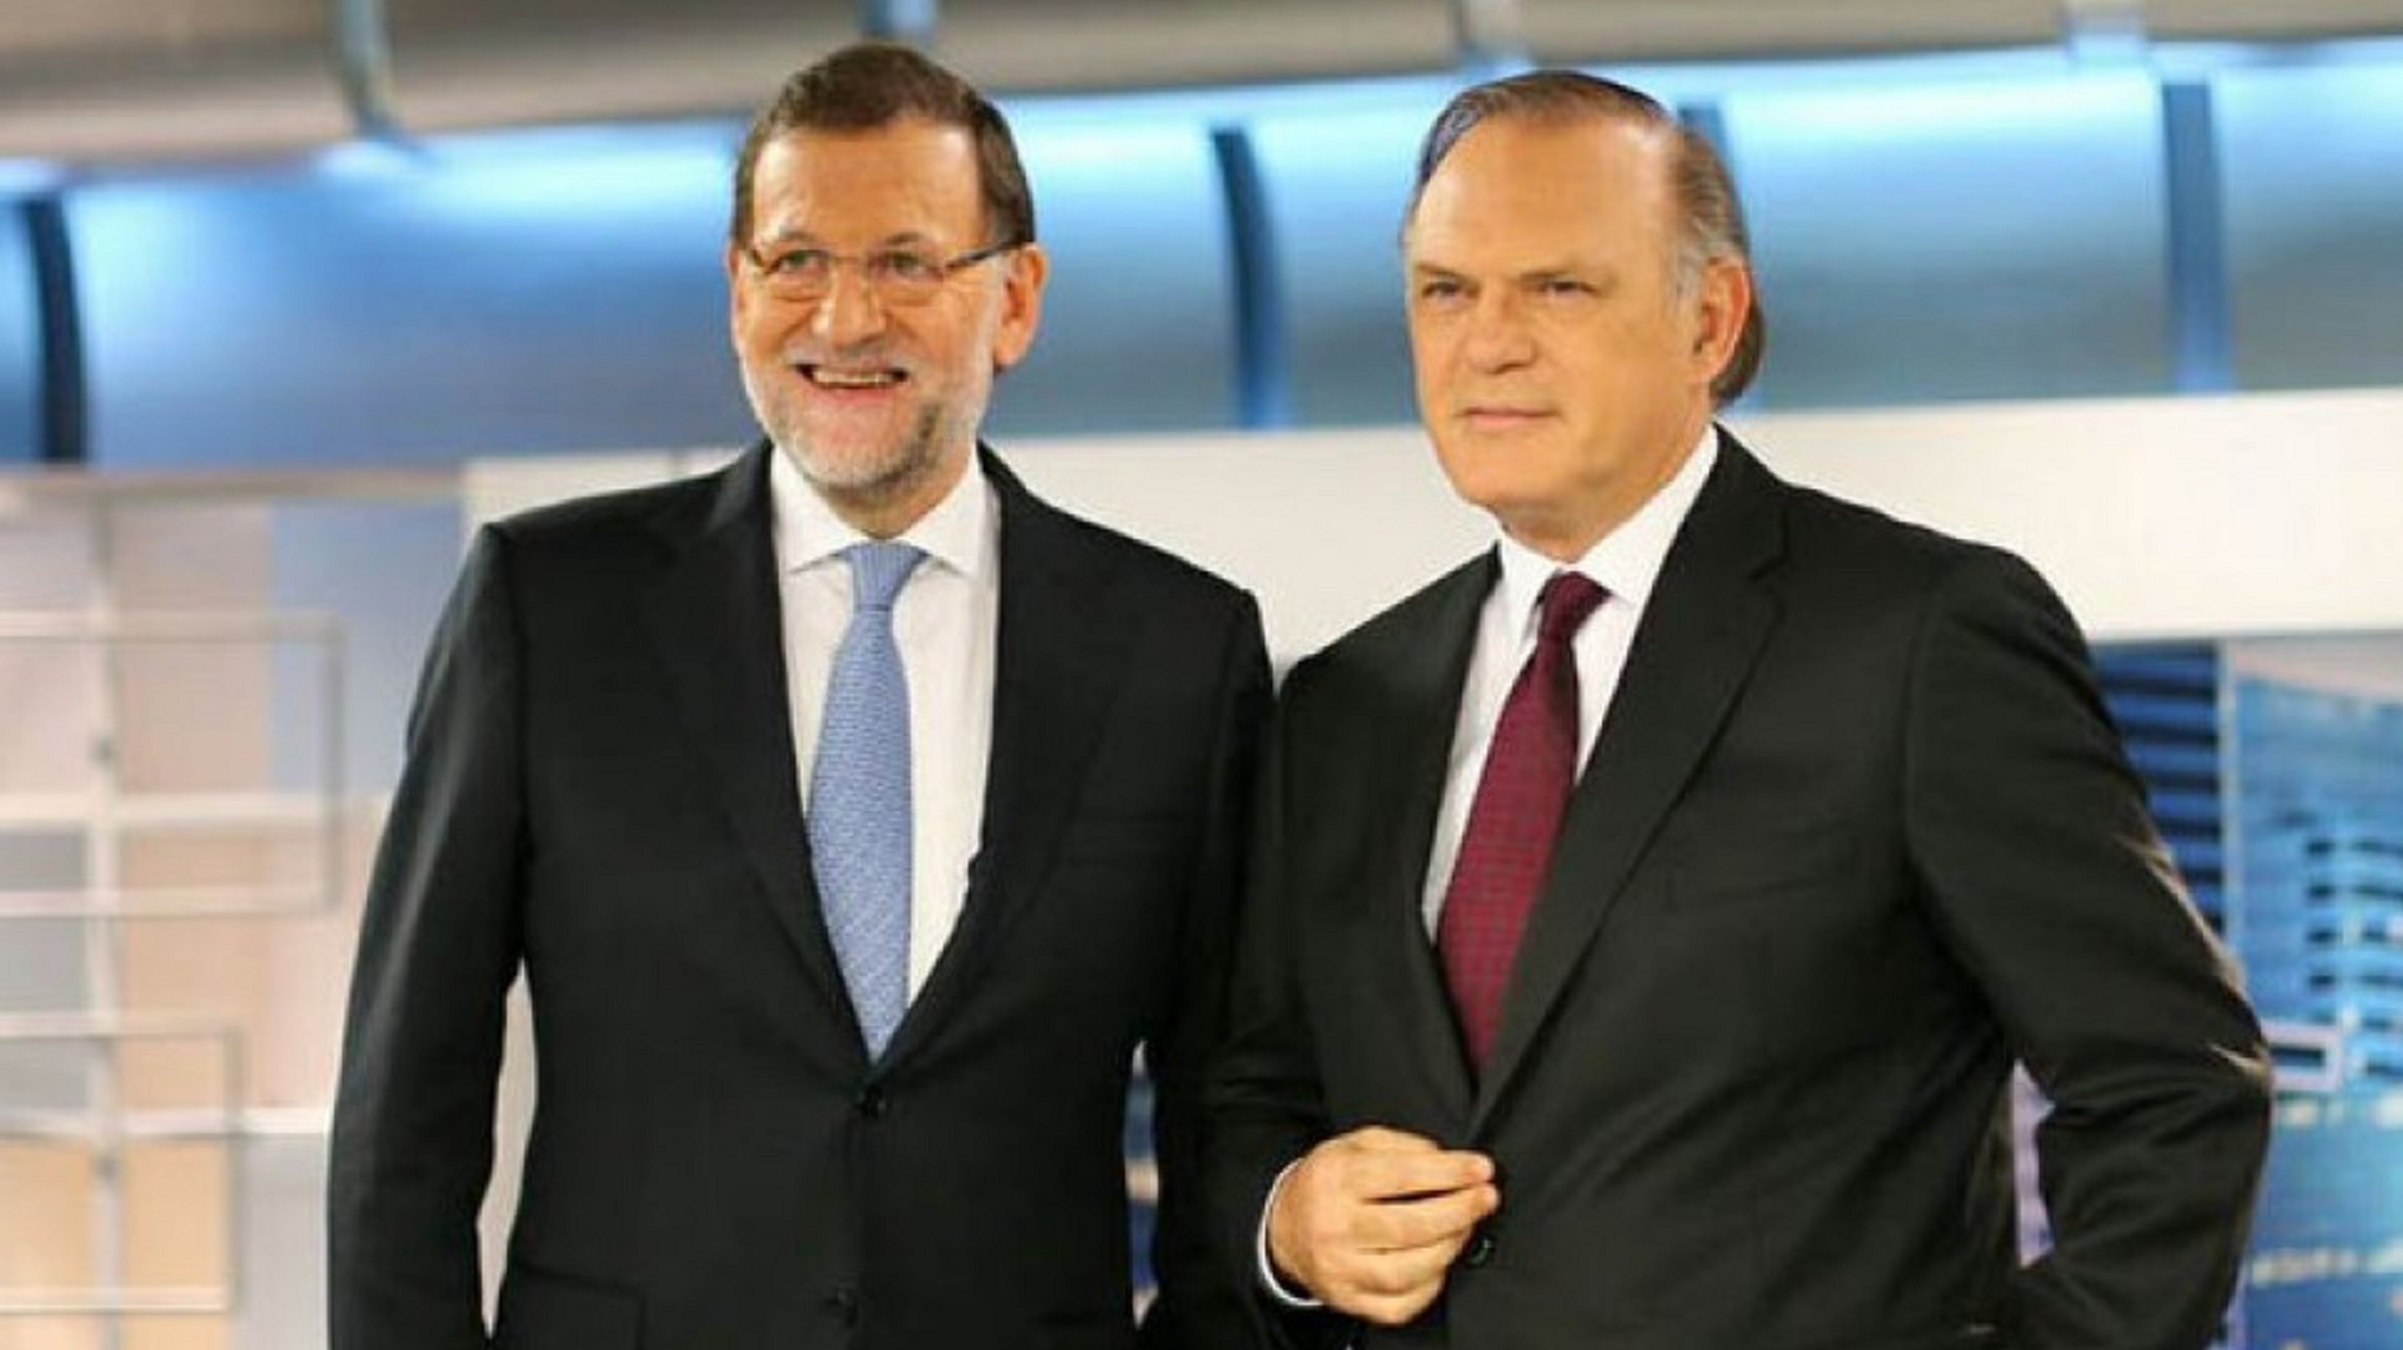 Critiquen Piqueras en fer una entrevista massa suau a Rajoy